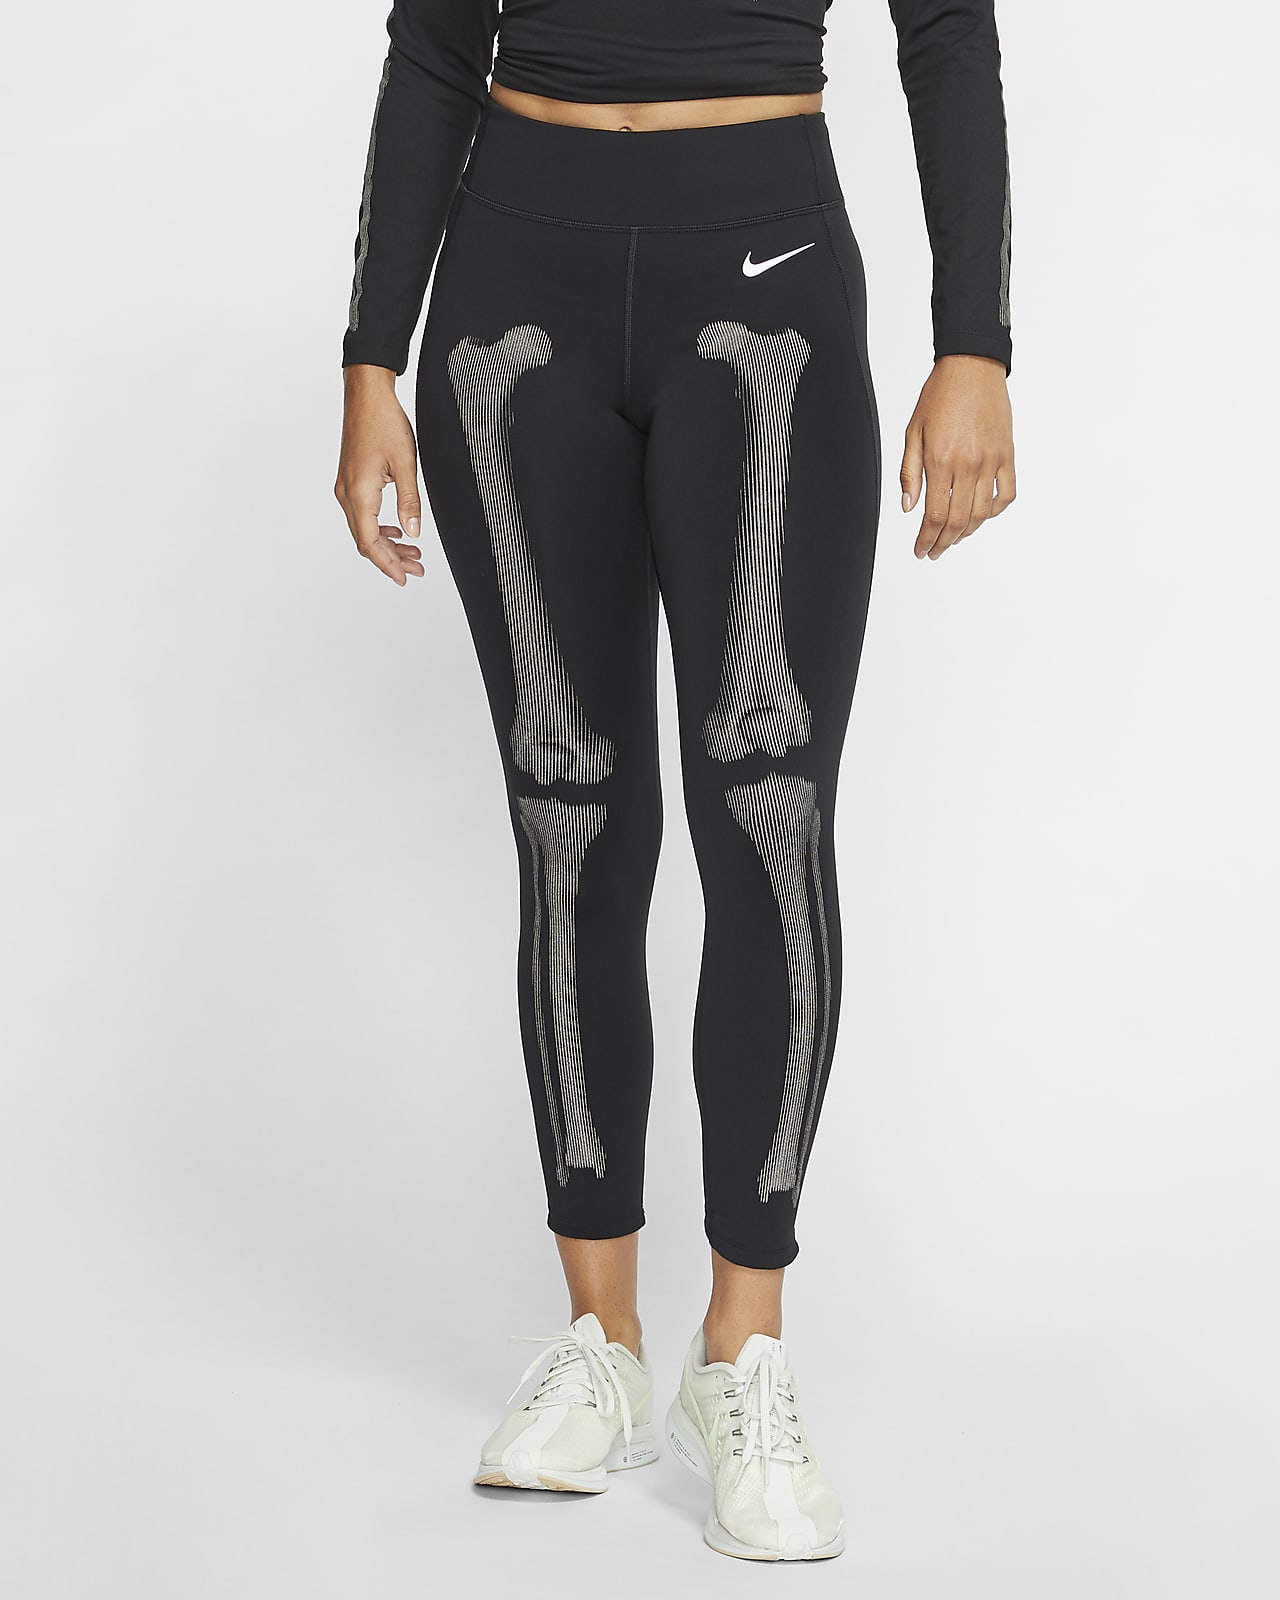 Nike Women's Skeleton Tights. Nike JP